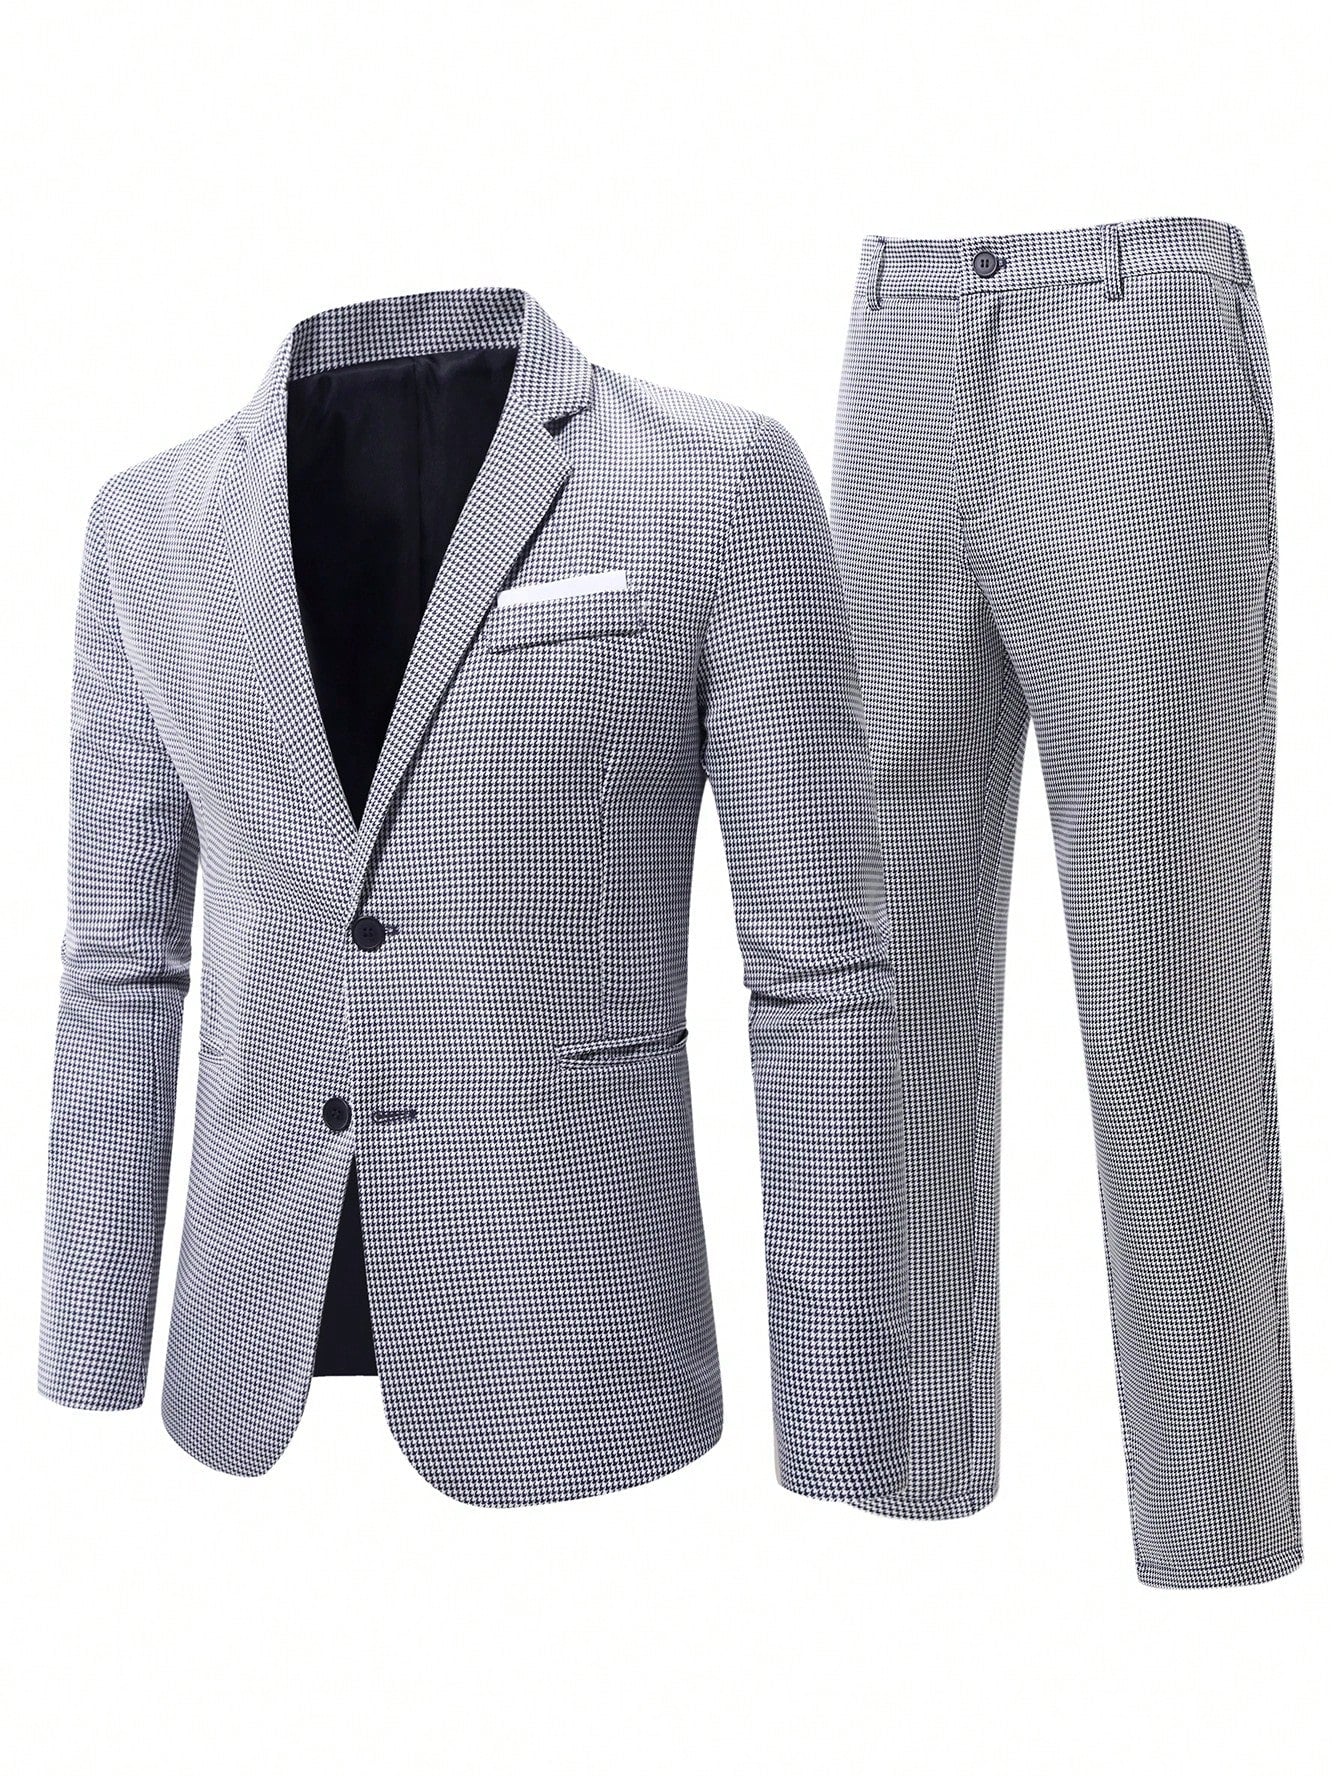 Men's Casual Plaid Suit Set